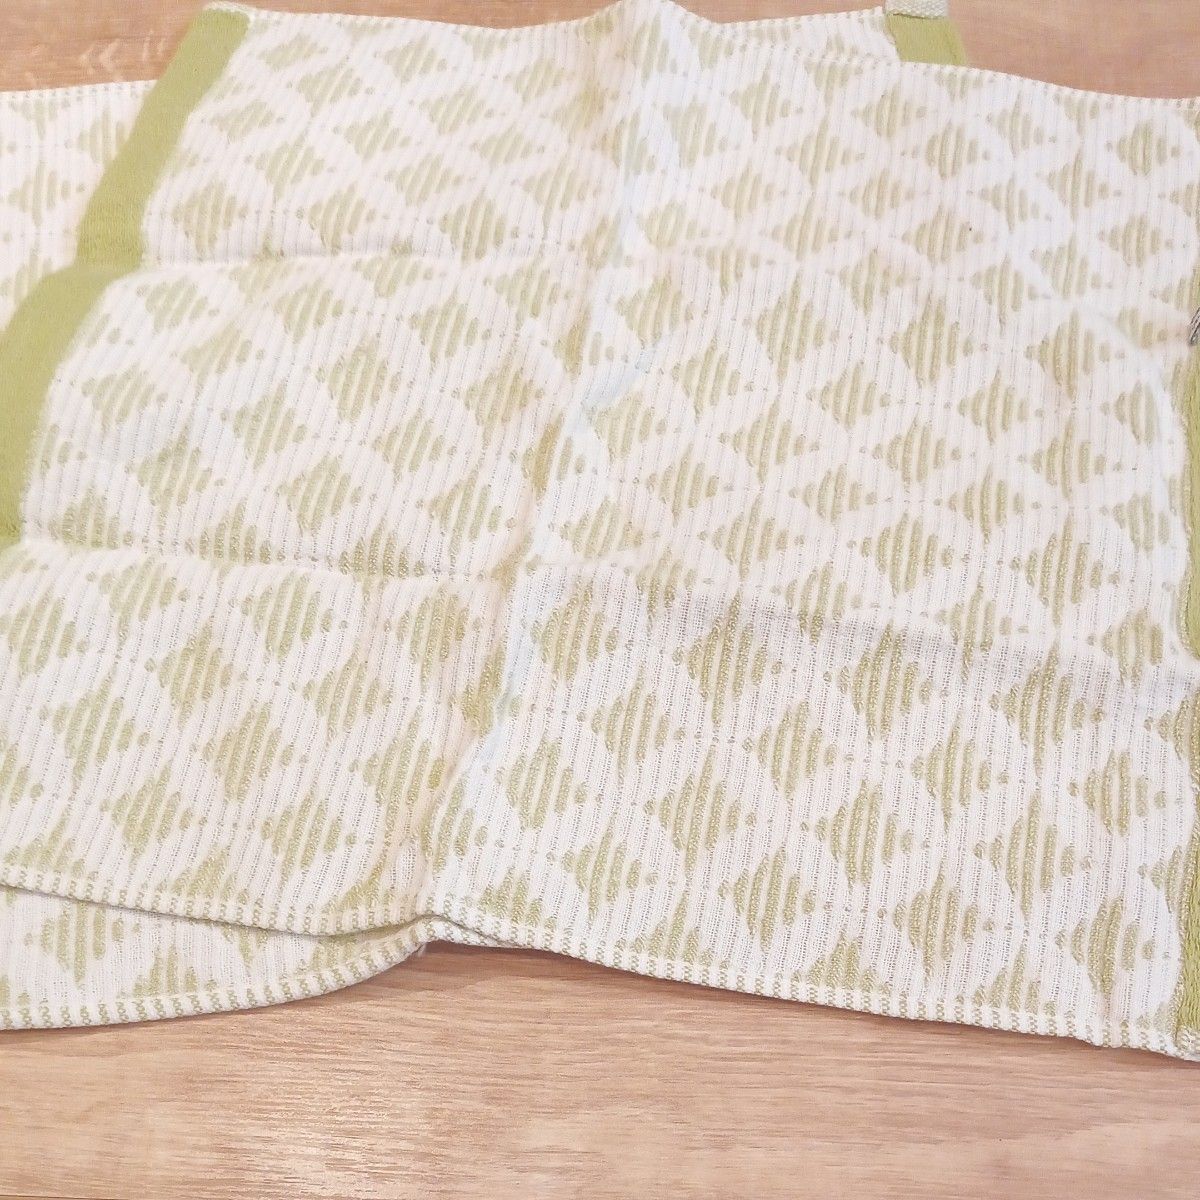 今治いまばり高品質タオルフェイスタオル日本製綿100ハンカチ3枚セット旅行ハンドタオル台布巾お手拭きなど多用途可能男女兼用春色緑